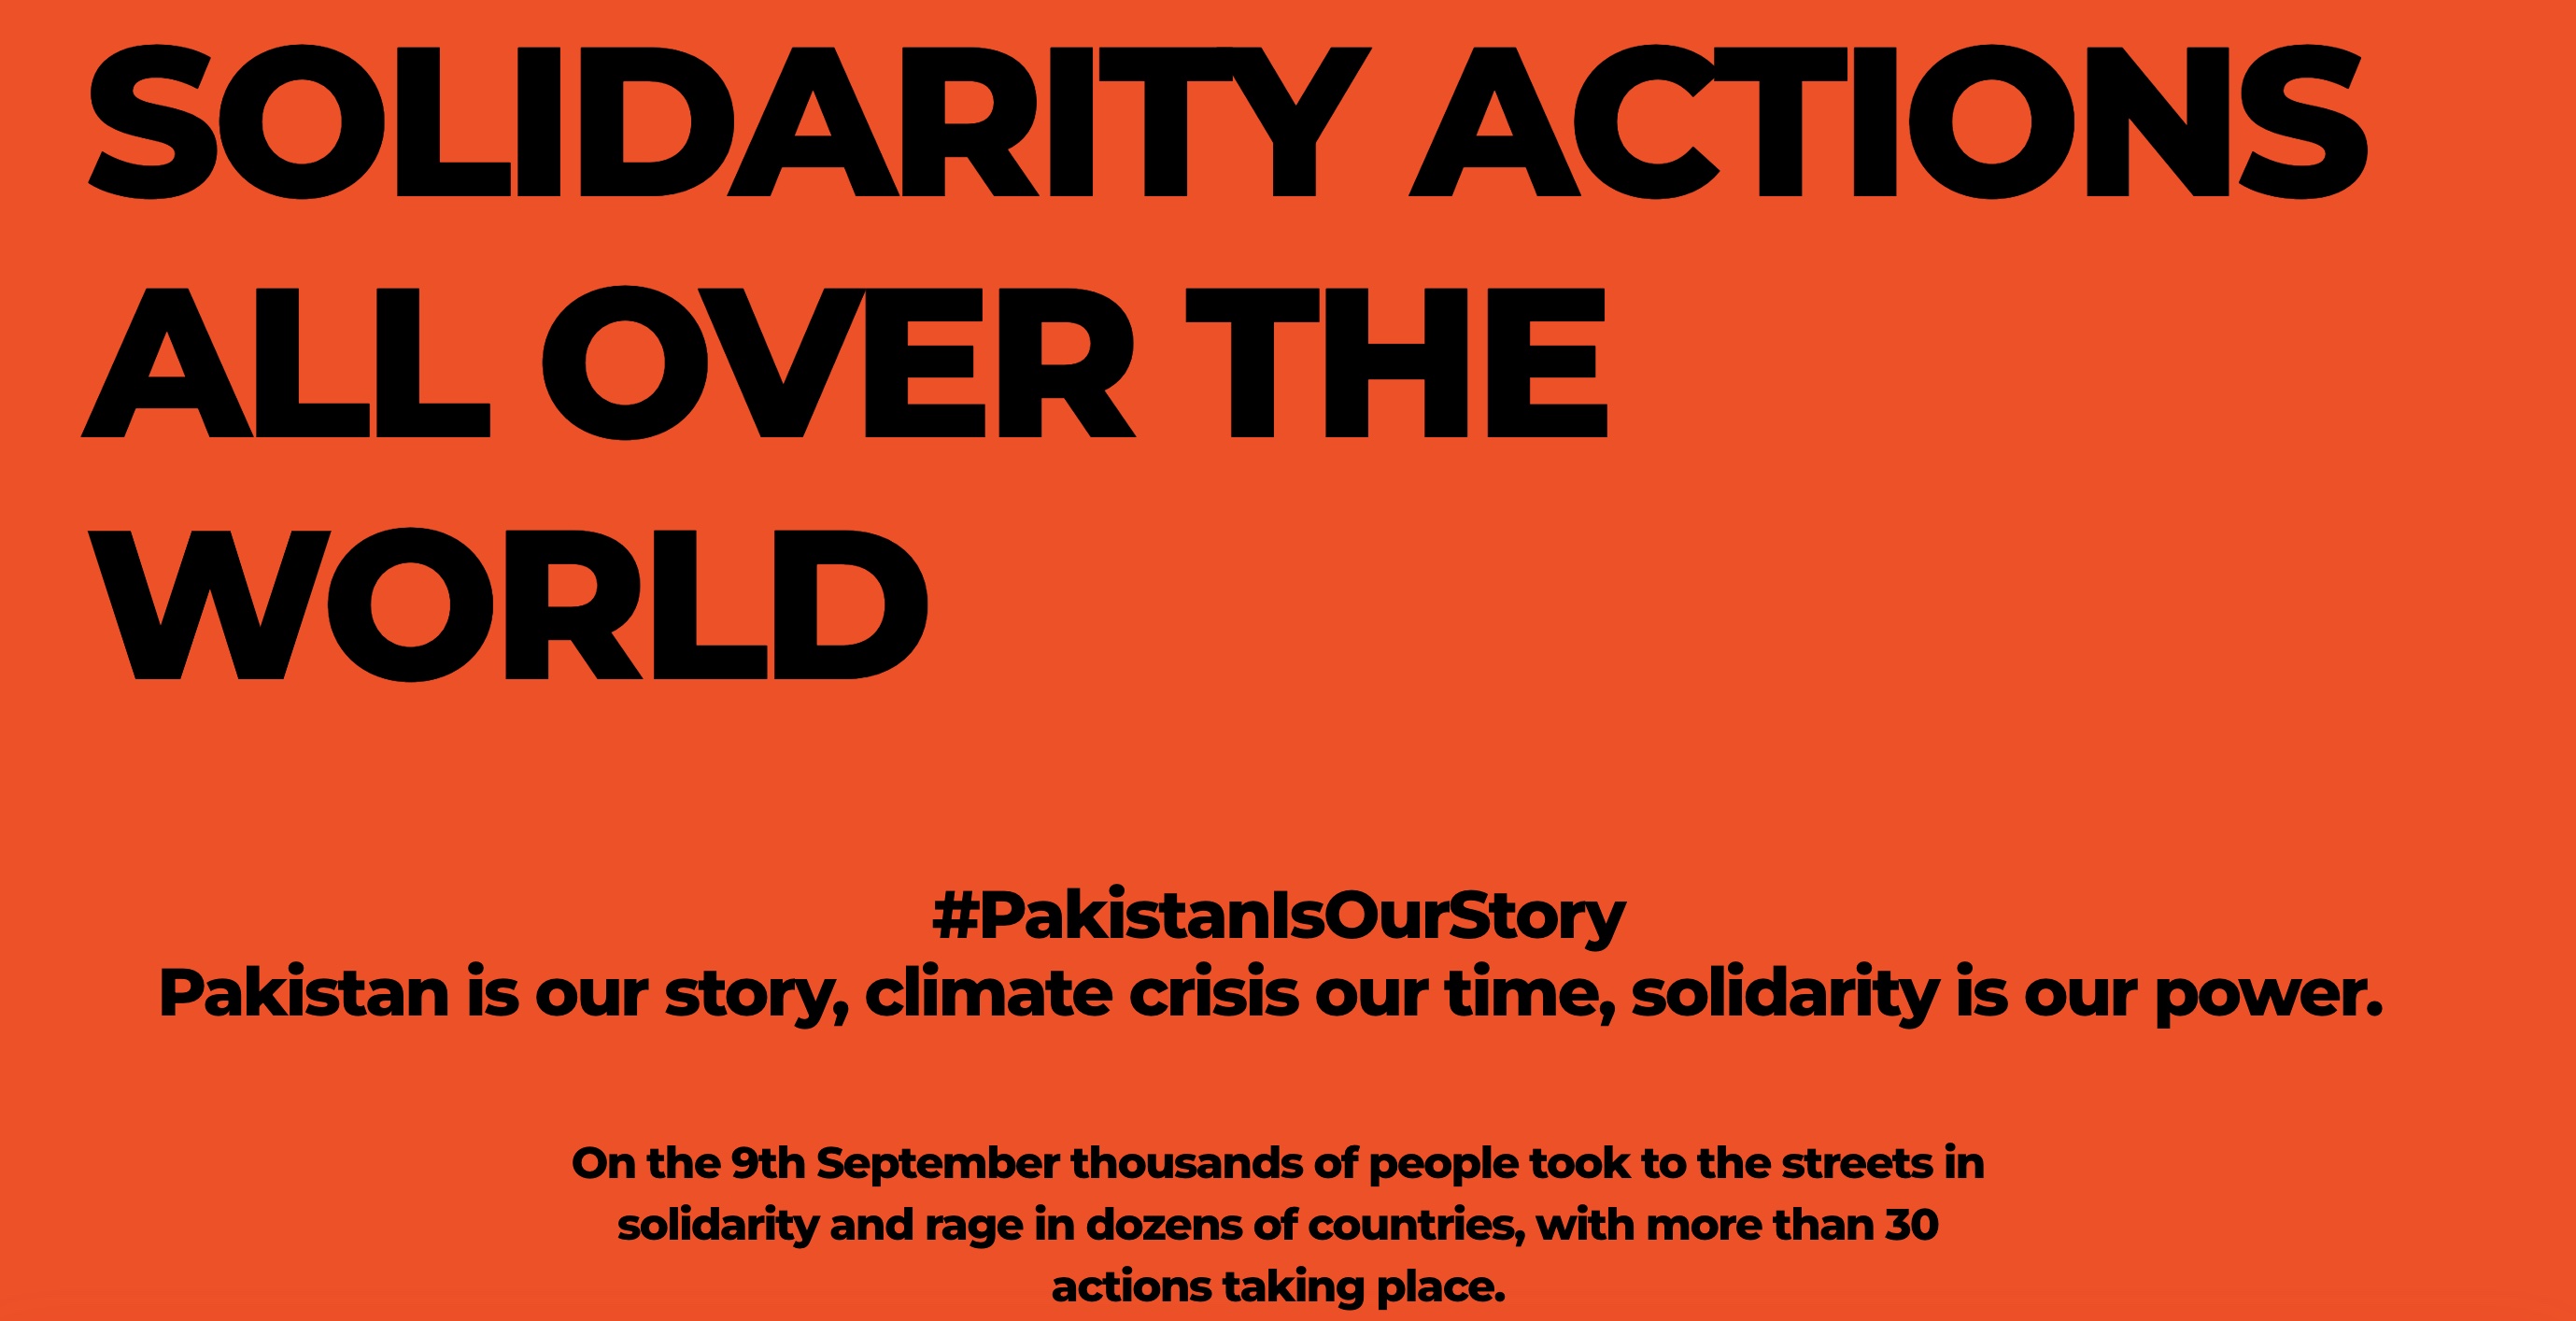 الصورة من موقع حملة #الباكستان قصتنا.